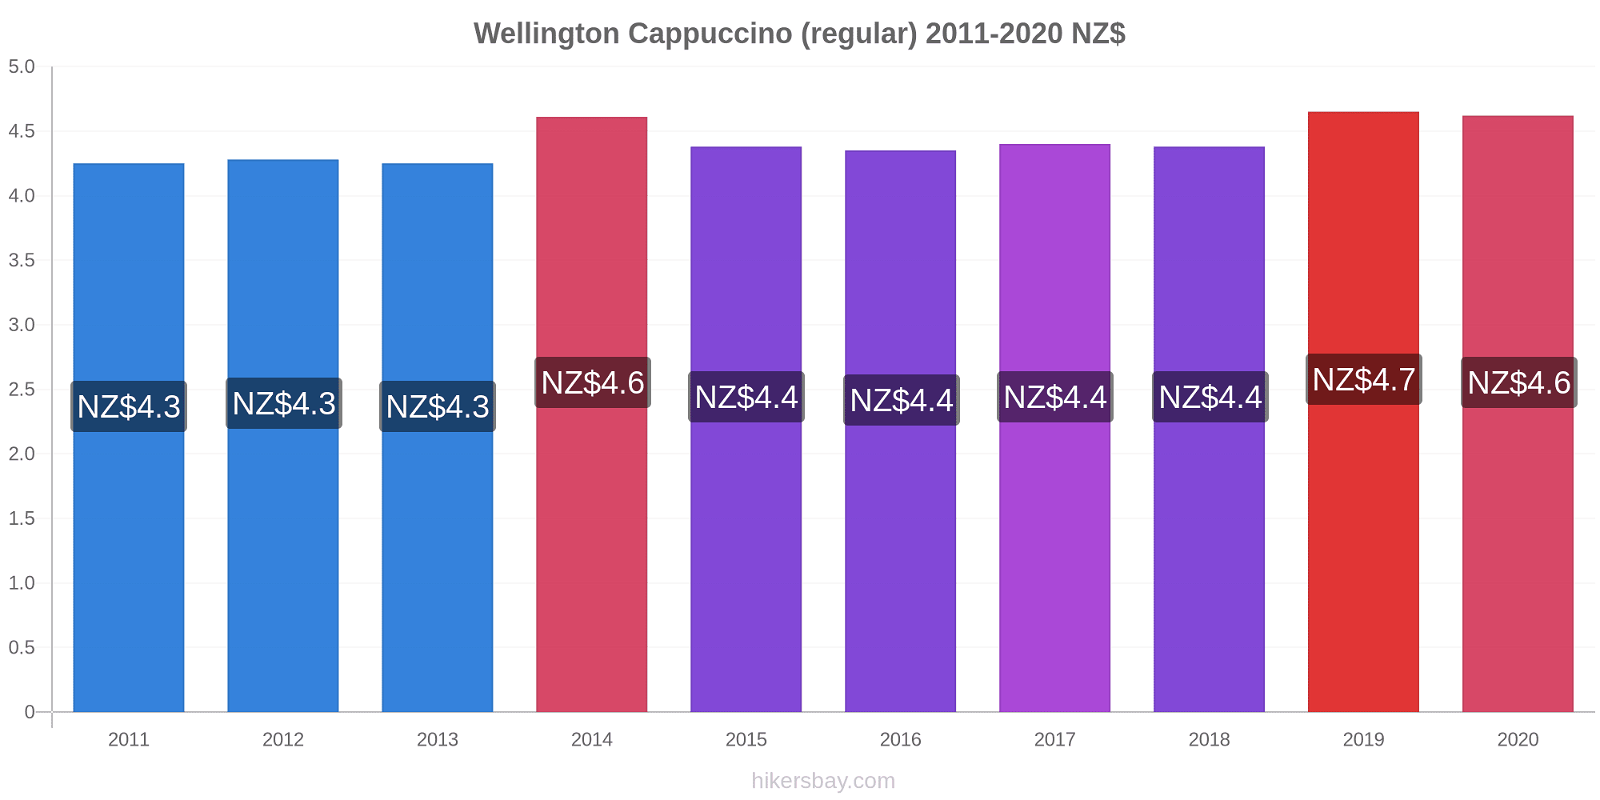 Wellington price changes Cappuccino (regular) hikersbay.com